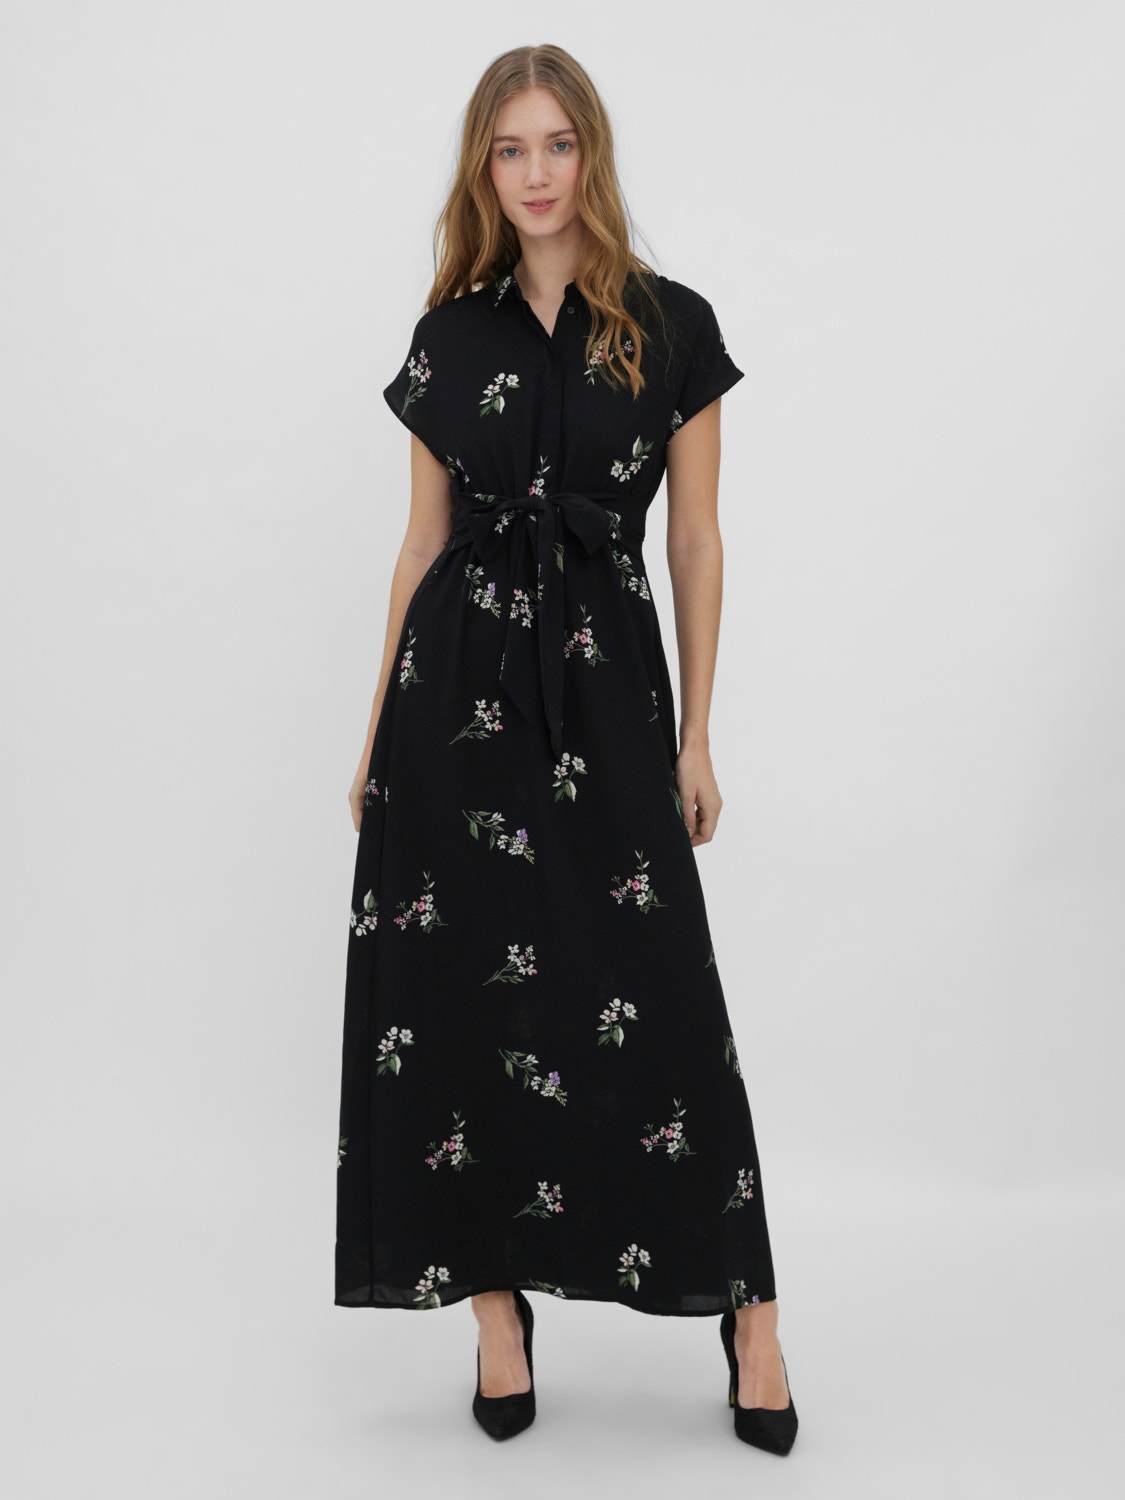 Logisch vroegrijp Reizen Lange jurk with 50% discount! | Vero Moda®